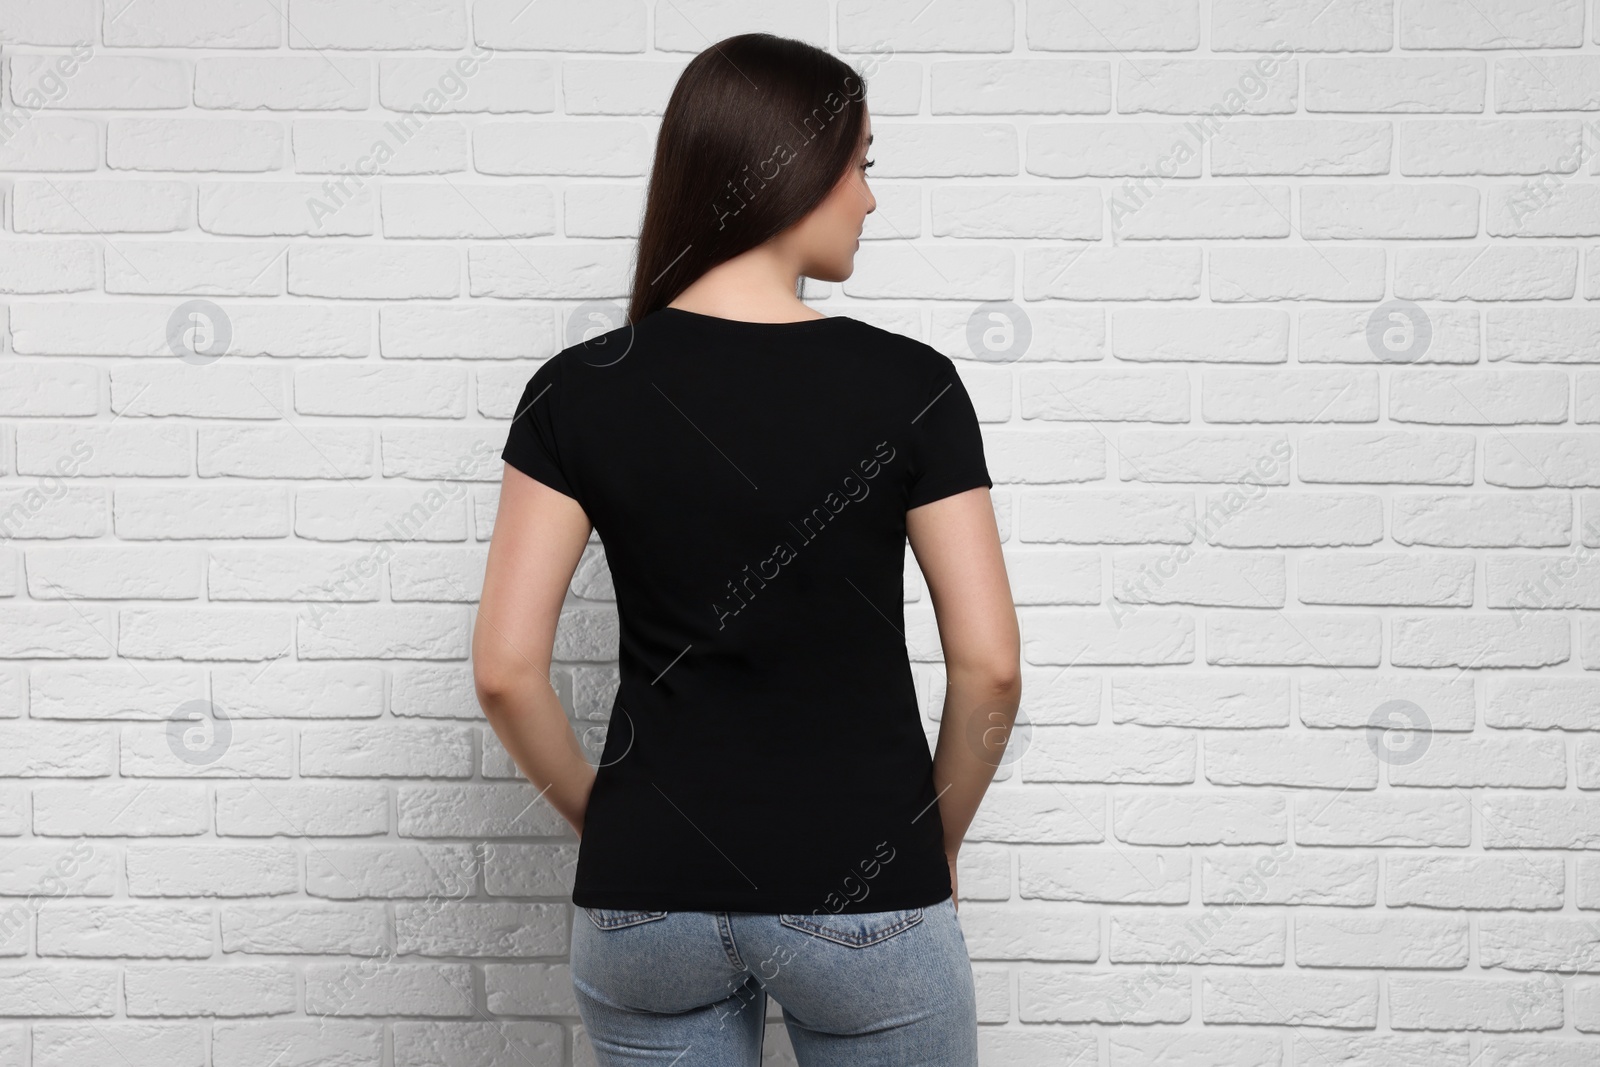 Photo of Woman wearing stylish black T-shirt near white brick wall, back view